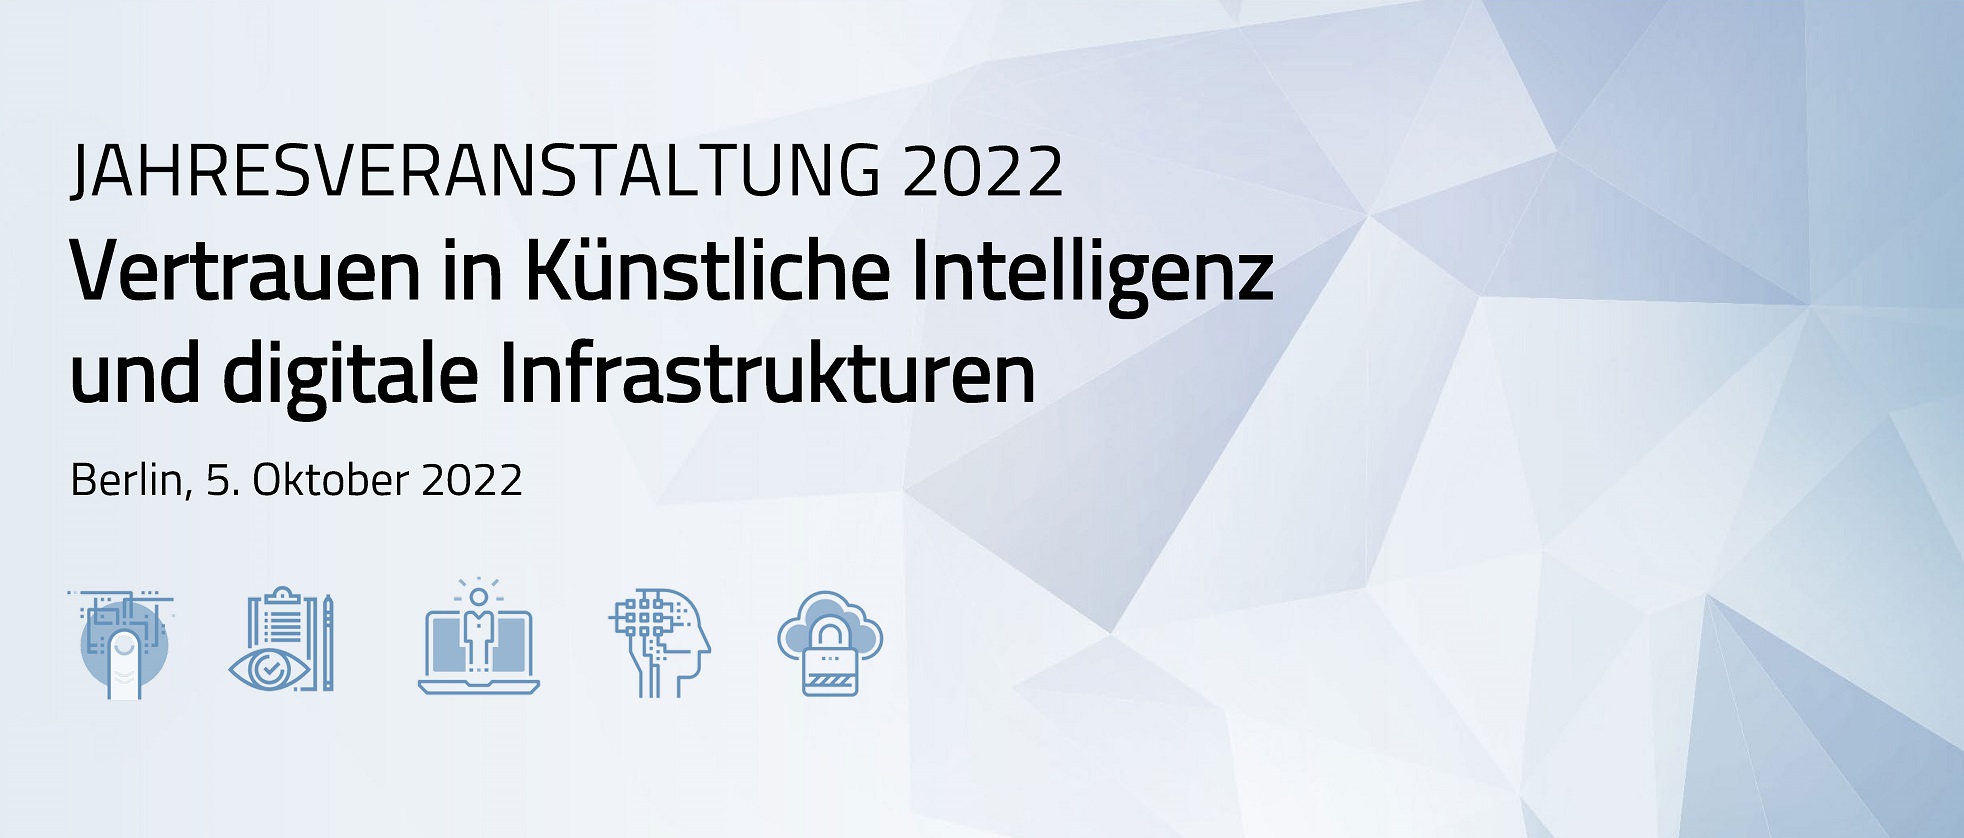 Jahresveranstaltung 2022 des Forum Digitale Technologien 